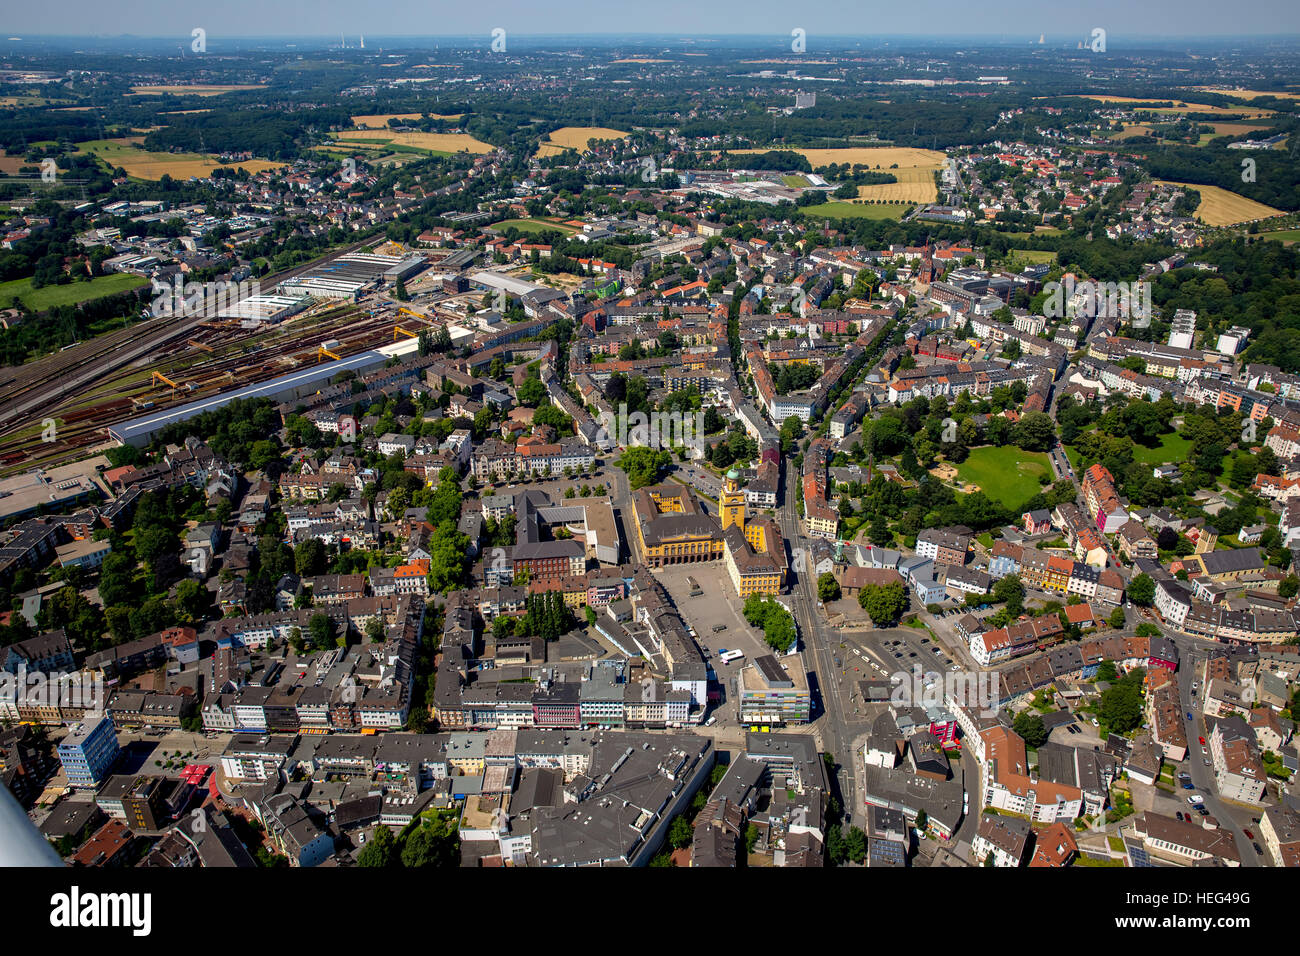 Luftaufnahme, Stadtzentrum mit Rathaus, Witten, Ruhrgebiet, Nordrhein-Westfalen, Deutschland Stockfoto